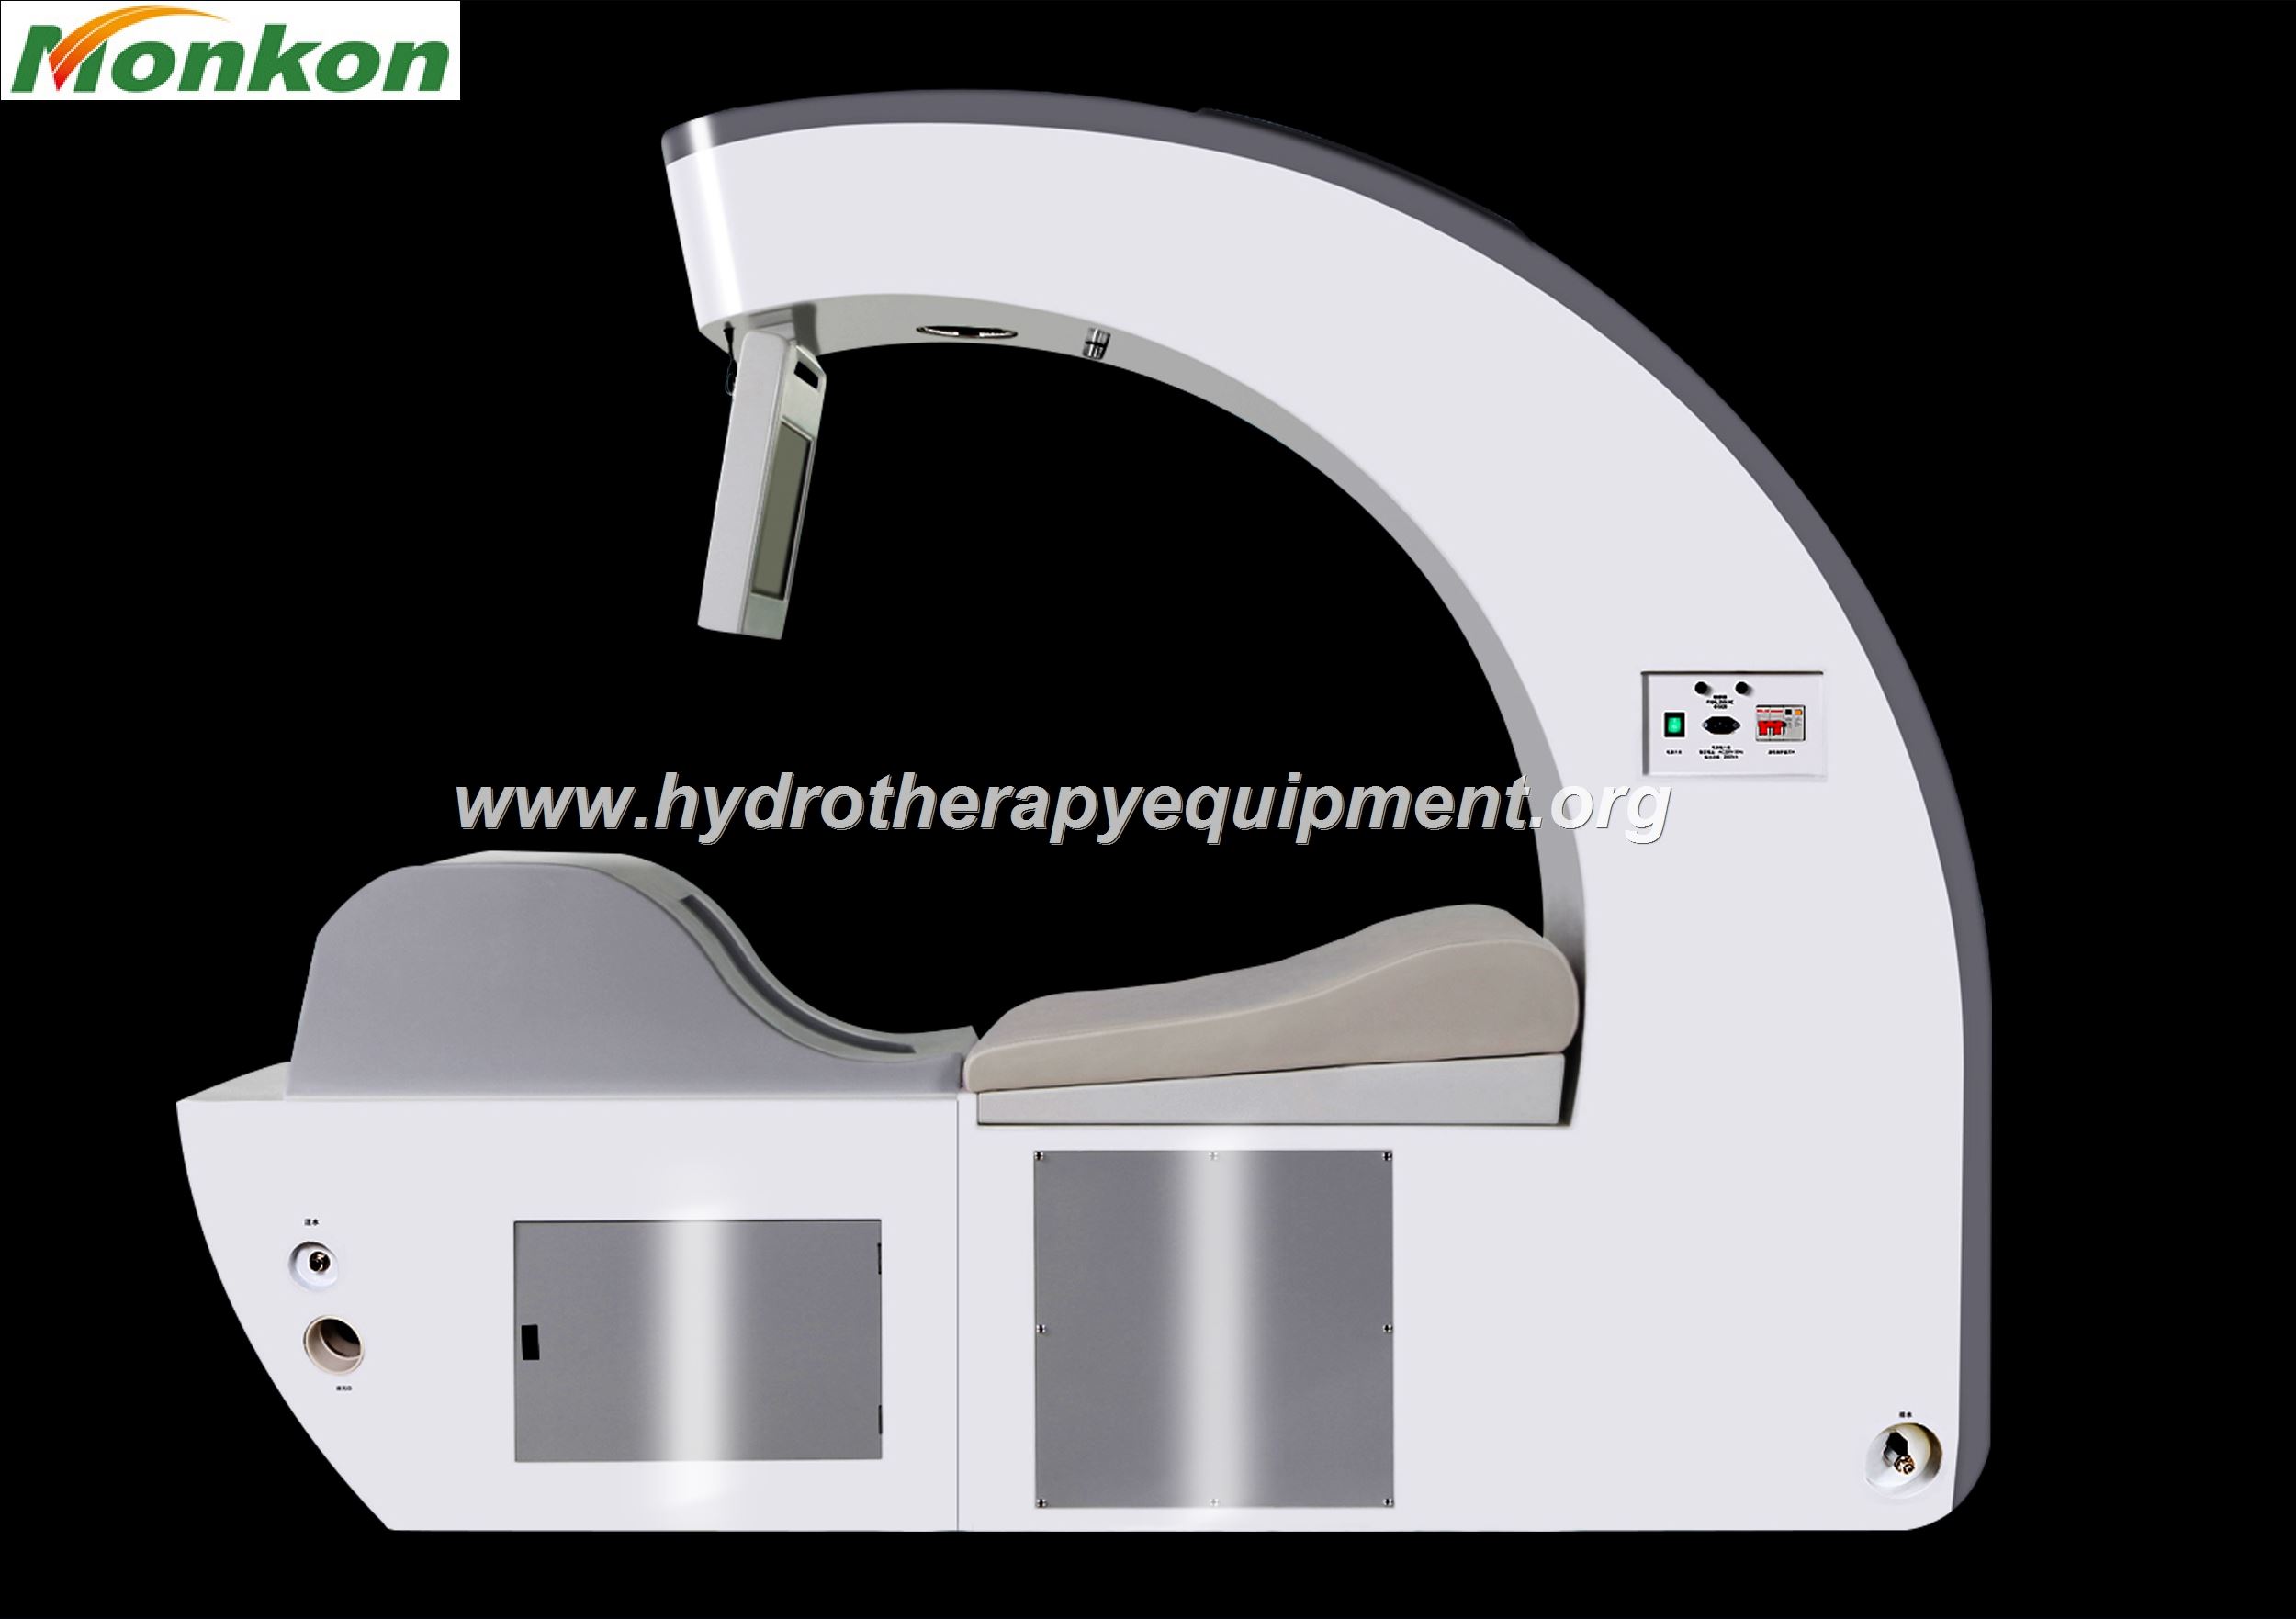 Geräte für die Colon-Hydro-Therapie in Indien